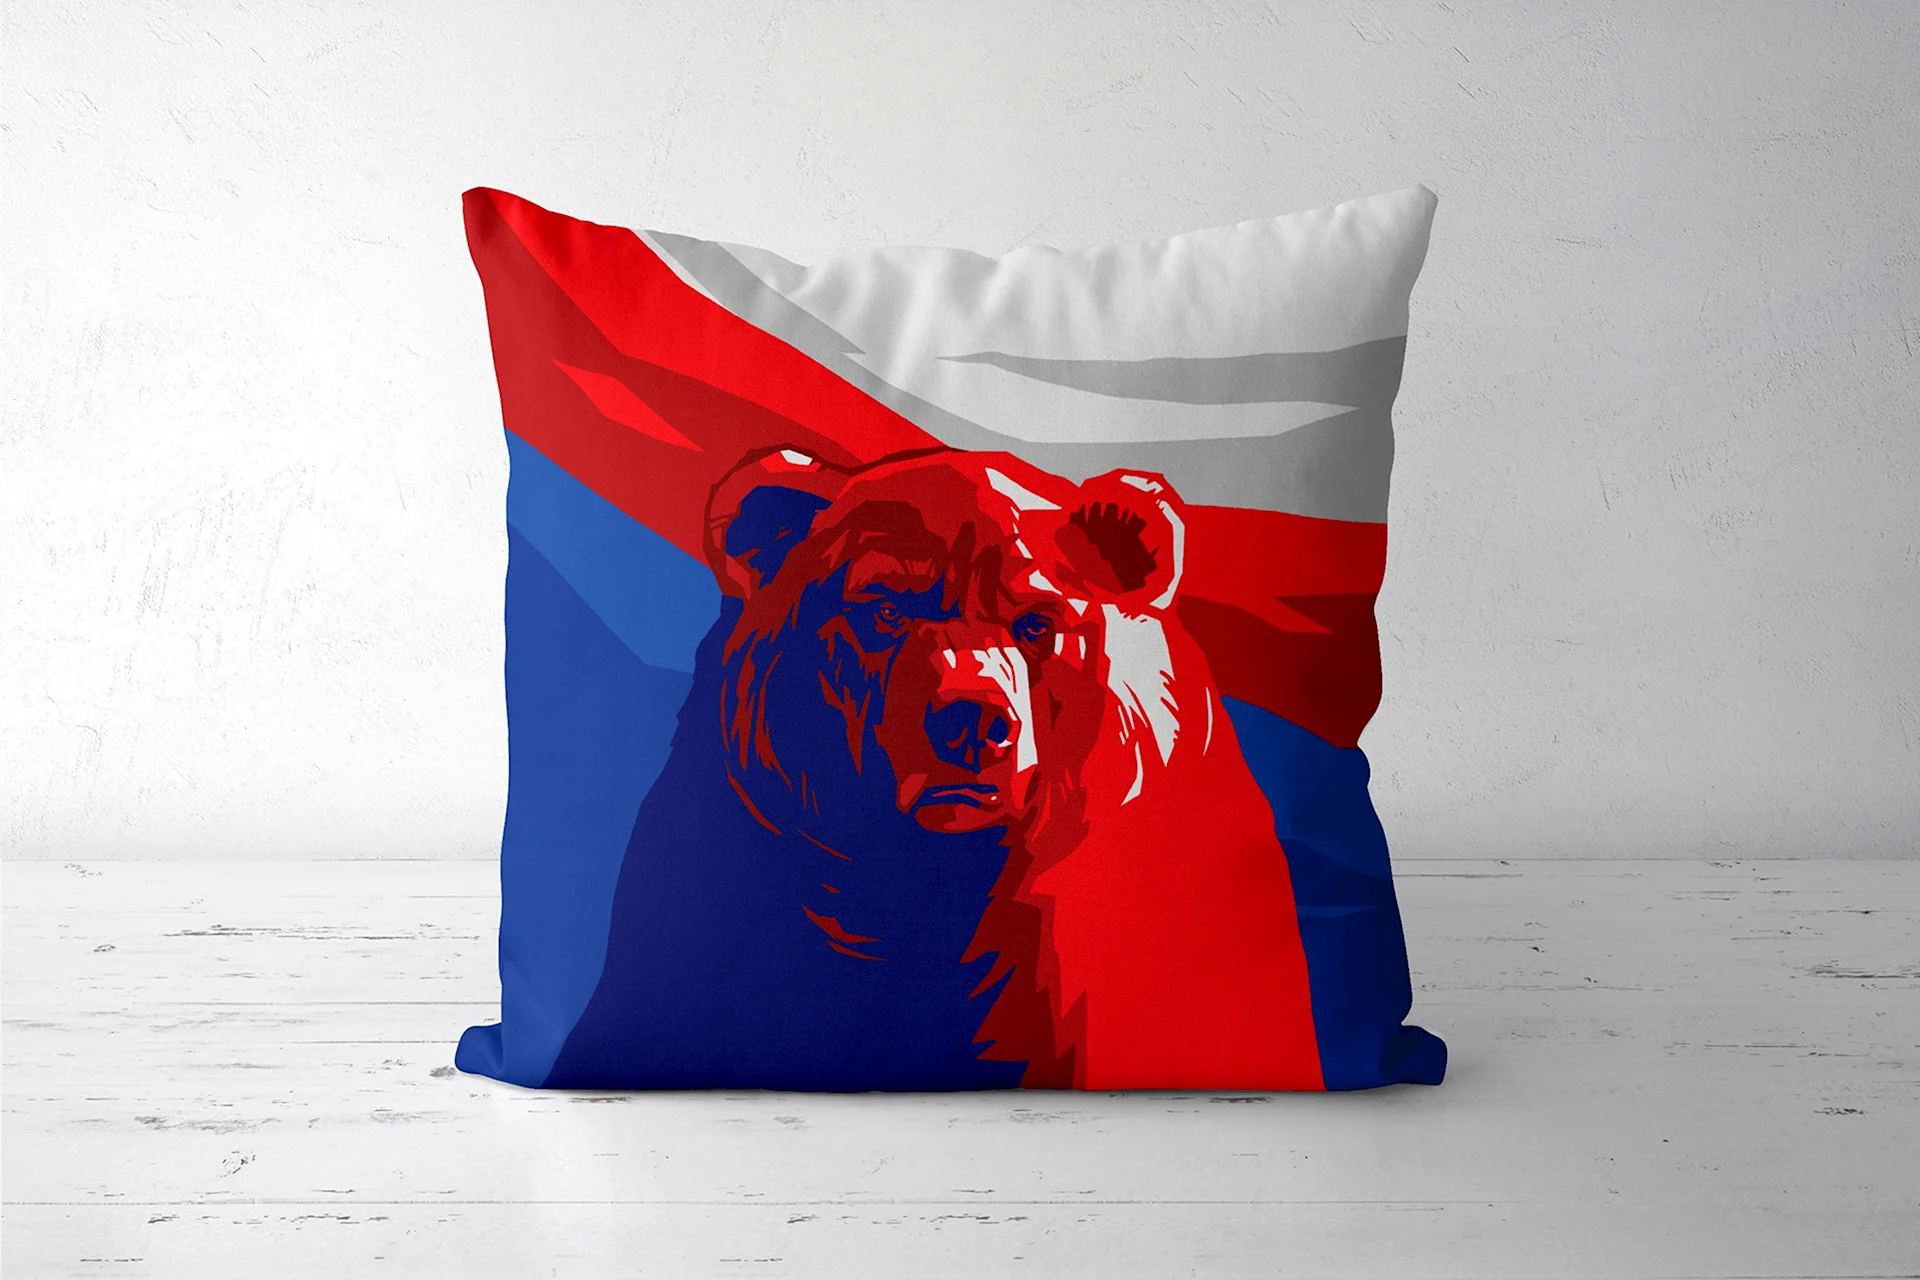 Обои на рабочий стол Россия медведь и флаг